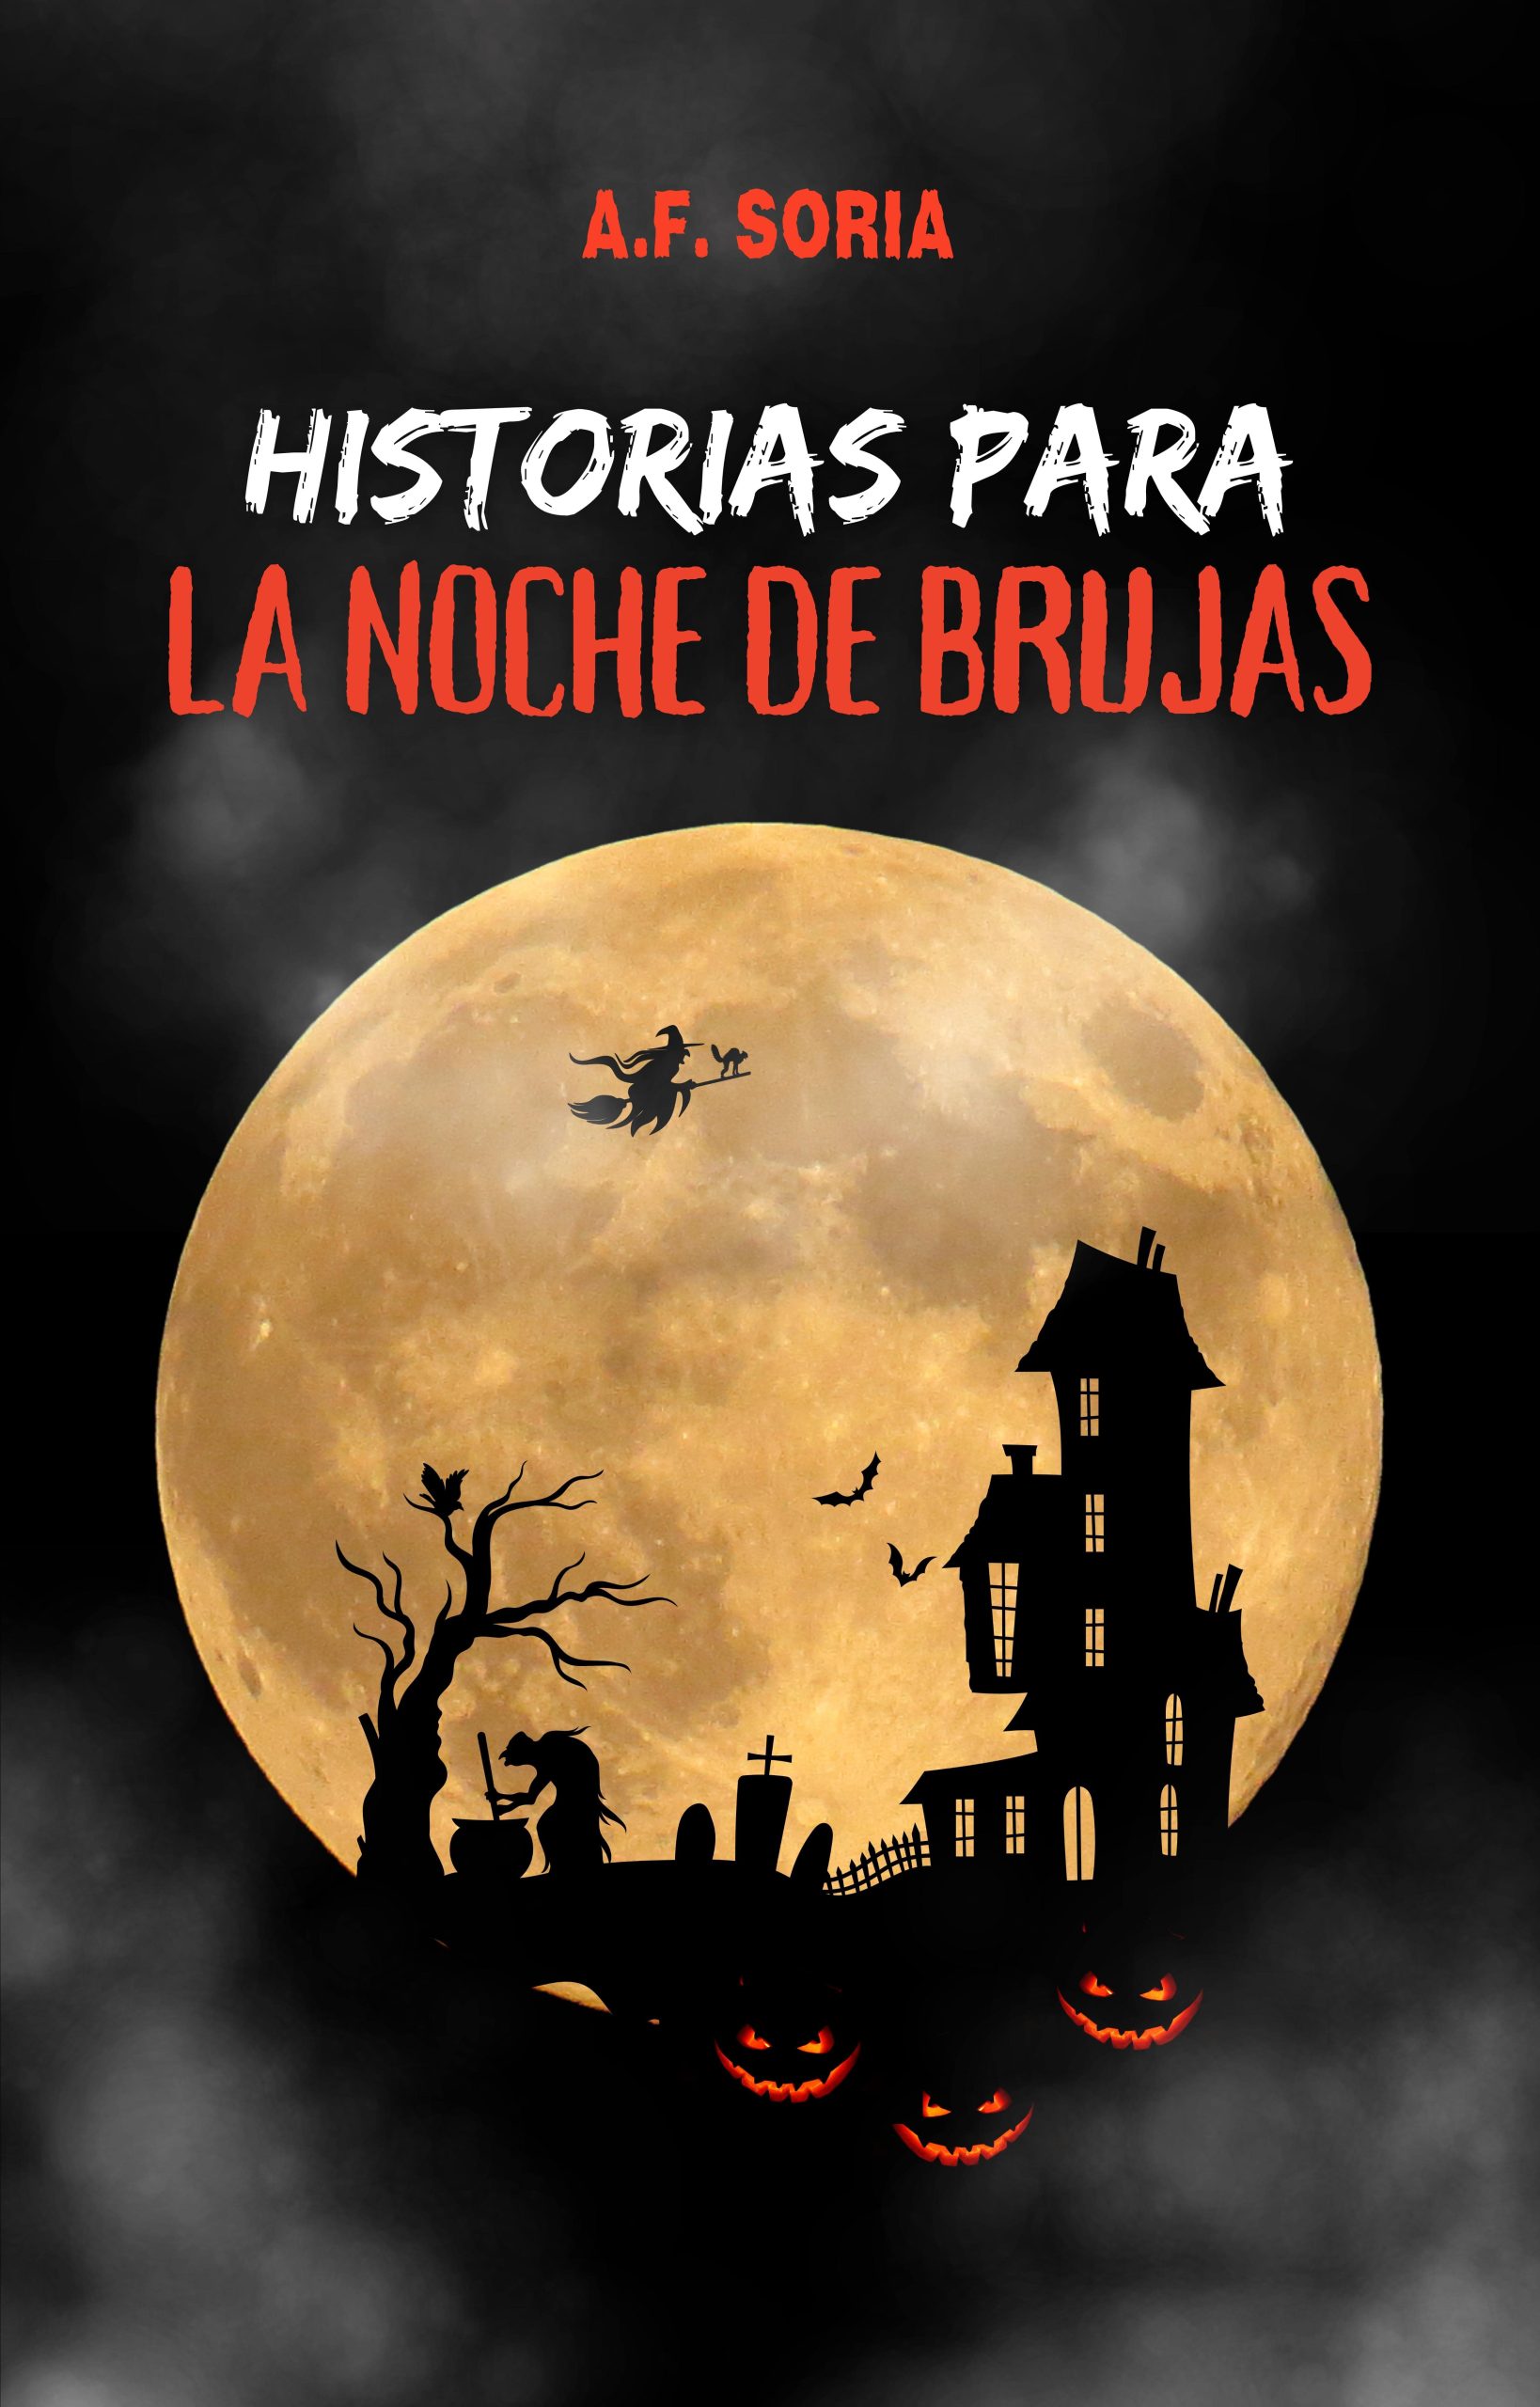 Reseña de “Historias para la Noche de Brujas”, de A. F. Soria | Por Nuria Bellido